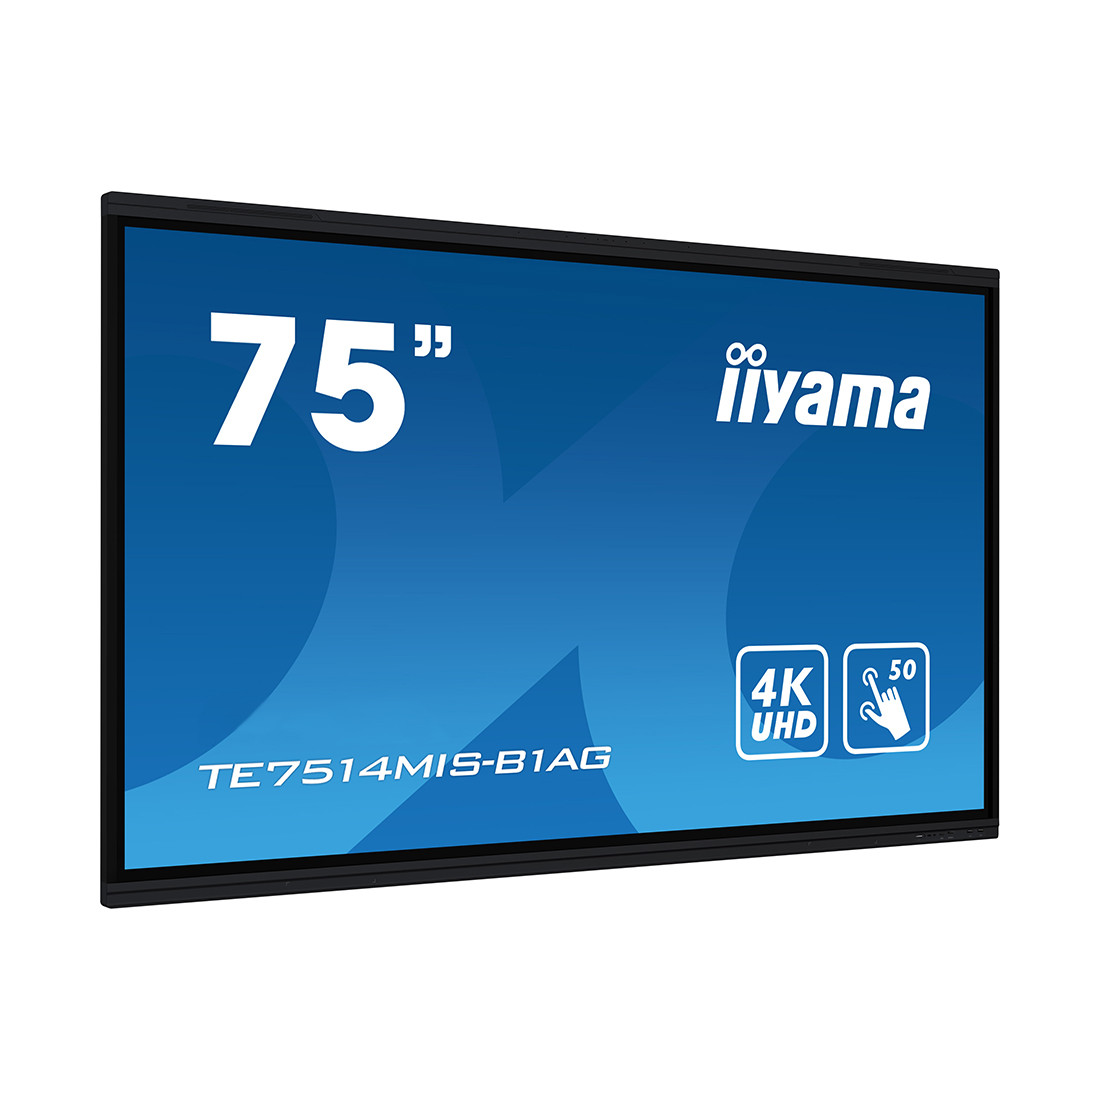 Интерактивная панель iiyama TE7514MIS-B1AG 2-017160-TOP